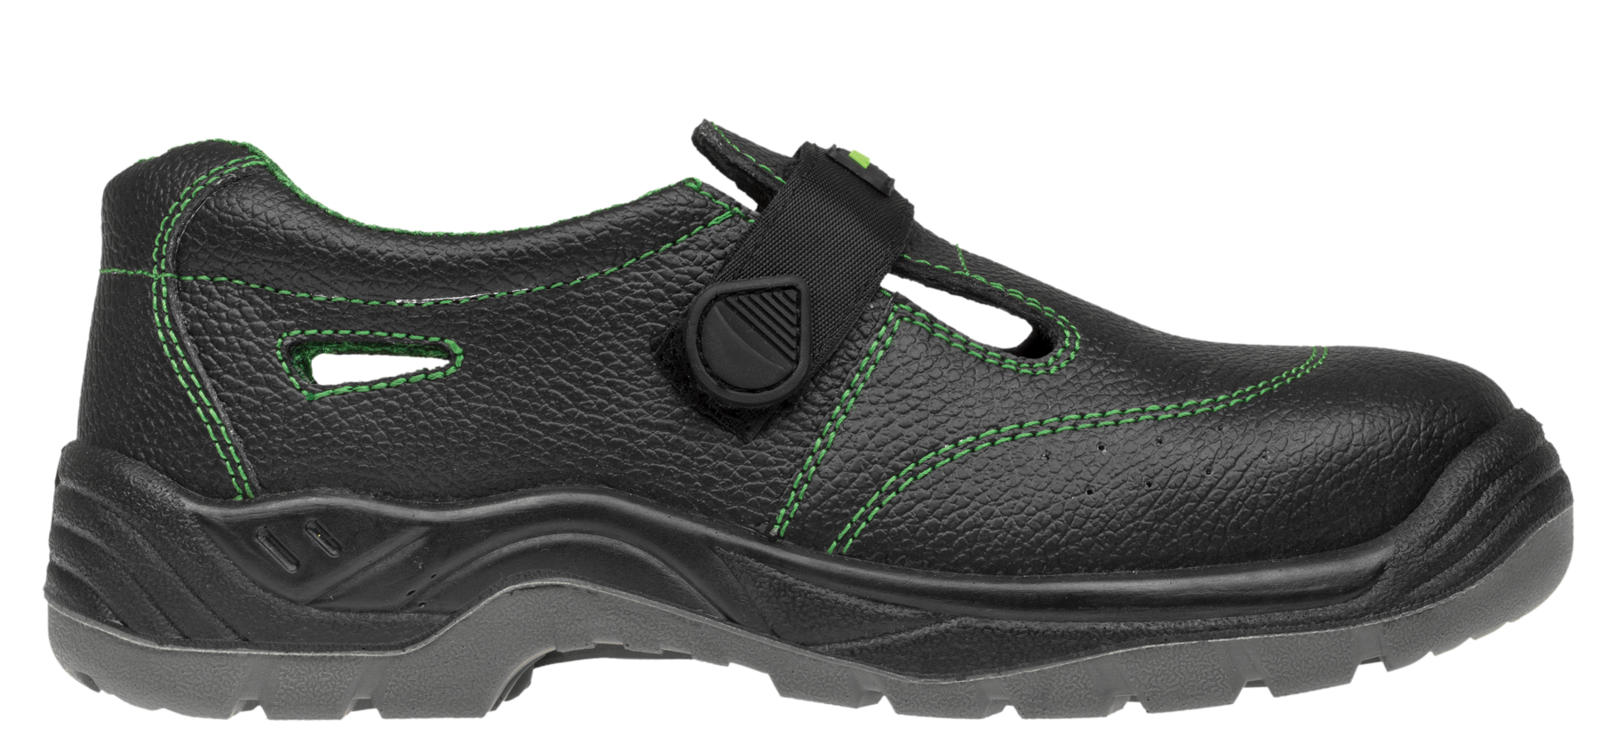 Bezpečnostné sandále Adamant Classic S1 - veľkosť: 45, farba: čierna